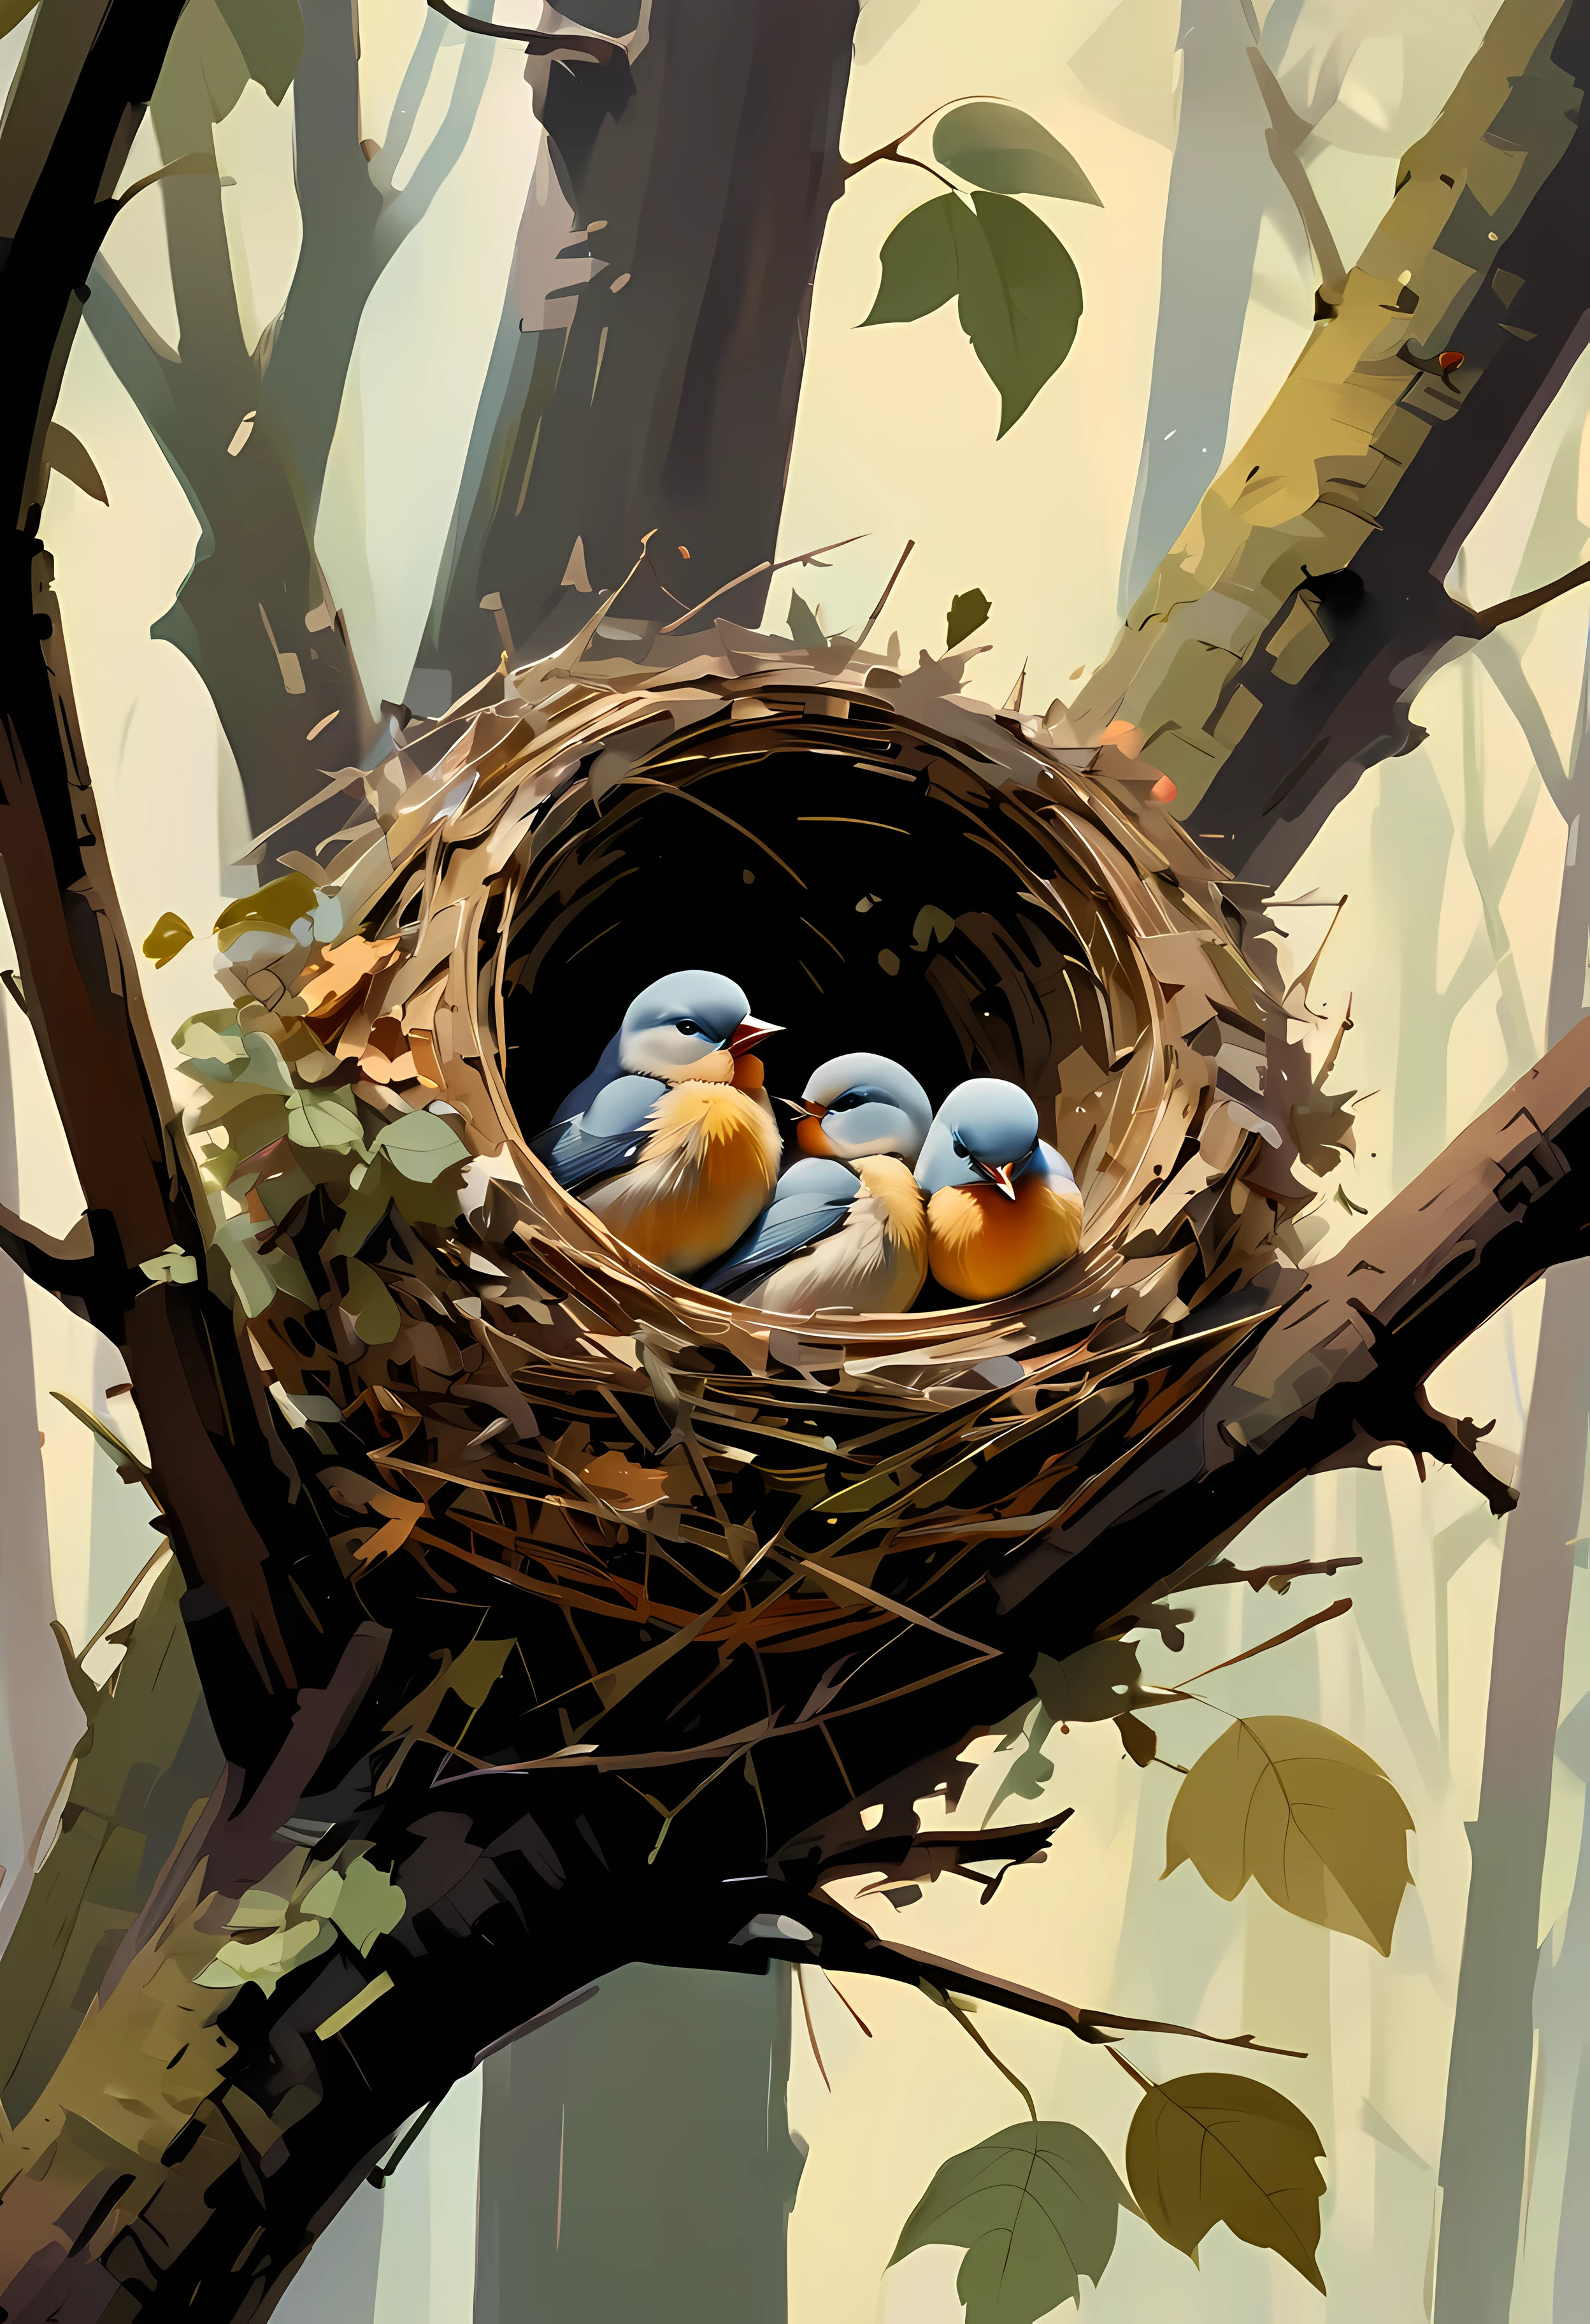 ((ธรรมชาติ_จิตรกรรม:)1.5), ((อ่อนนุ่ม_สี_โทนเสียง):1.4), ((พื้นหลังป่าที่มีชีวิตชีวา):1.3), ((อ่อนนุ่ม สี baby birds):1.4)),((มุมมองตานกของรังนก):1.2),((ภาพนิ่งและมุมไดนามิกเหมือนภาพยนตร์):1.3), ((เงาที่เย็นและสวยงาม):1.1), Gouache ที่มีรายละเอียดที่ซับซ้อน, เพิ่มความสมจริงให้กับผลงานชิ้นเอกที่มีรายละเอียดทางสายตาและมีสไตล์ที่หลากหลาย, ฝีแปรงที่มีรายละเอียดได้รับการปรับปรุงแล้ว, พู่กันอย่างระมัดระวังสร้างบรรยากาศ, ใช้เทคนิคฝีแปรงที่ละเอียดอ่อนแต่ทรงพลัง, สร้างบรรยากาศอันน่าหลงใหล. gouache ที่มีรายละเอียดสูง, ((ความคมชัดและความคมชัดที่ไม่มีใครเทียบได้):1.1), ((Radiosity เรนเดอร์ด้วยความละเอียด 32K อันน่าทึ่ง):1.3), จับภาพทั้งหมดด้วยโฟกัสที่คมชัด.